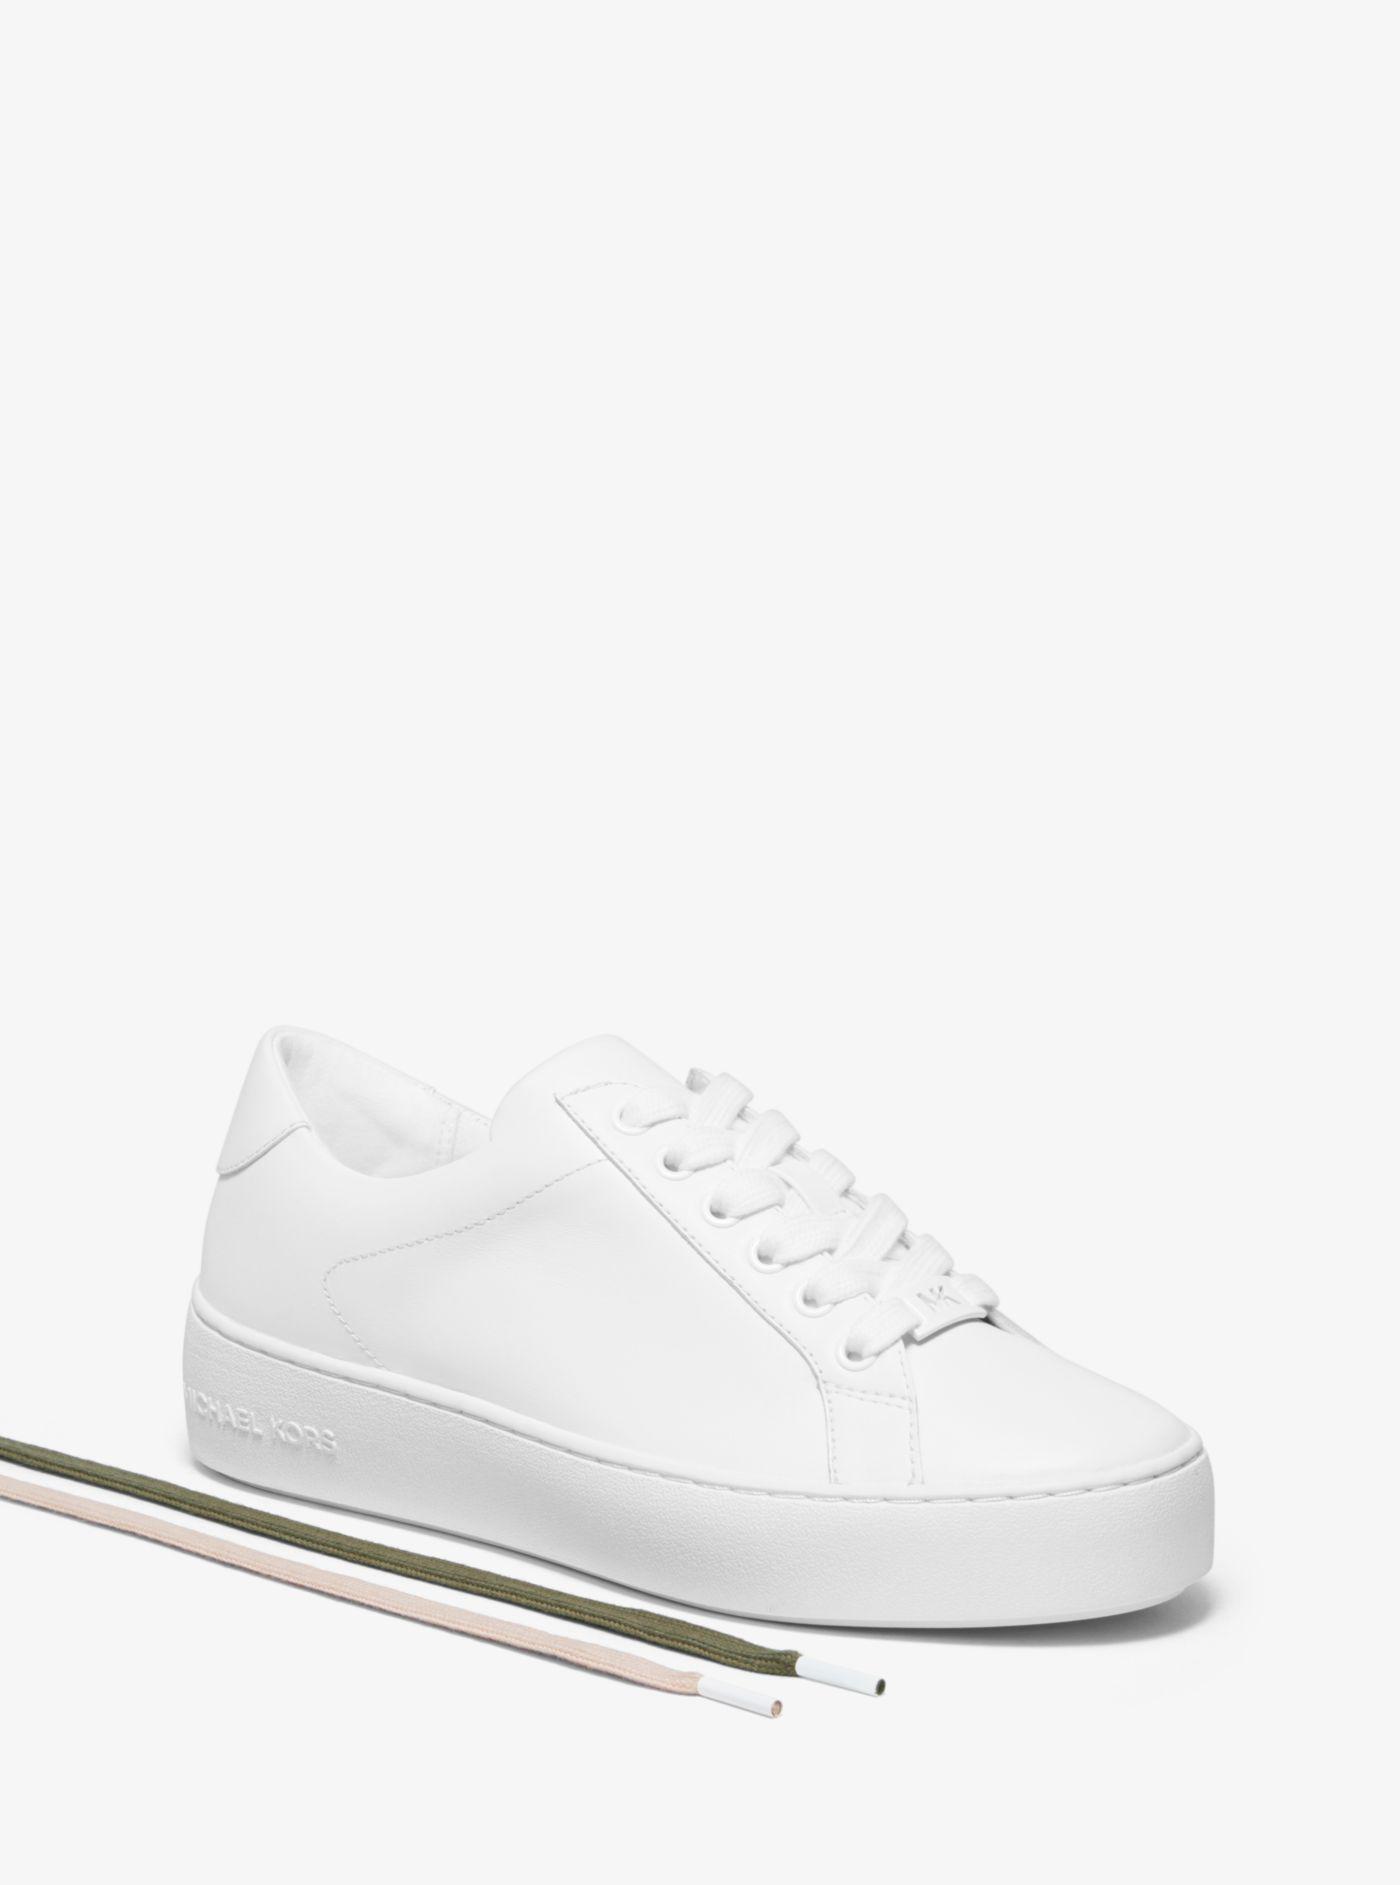 gennemsnit Levere Prædiken Michael Kors Poppy Leather Sneaker in White - Lyst